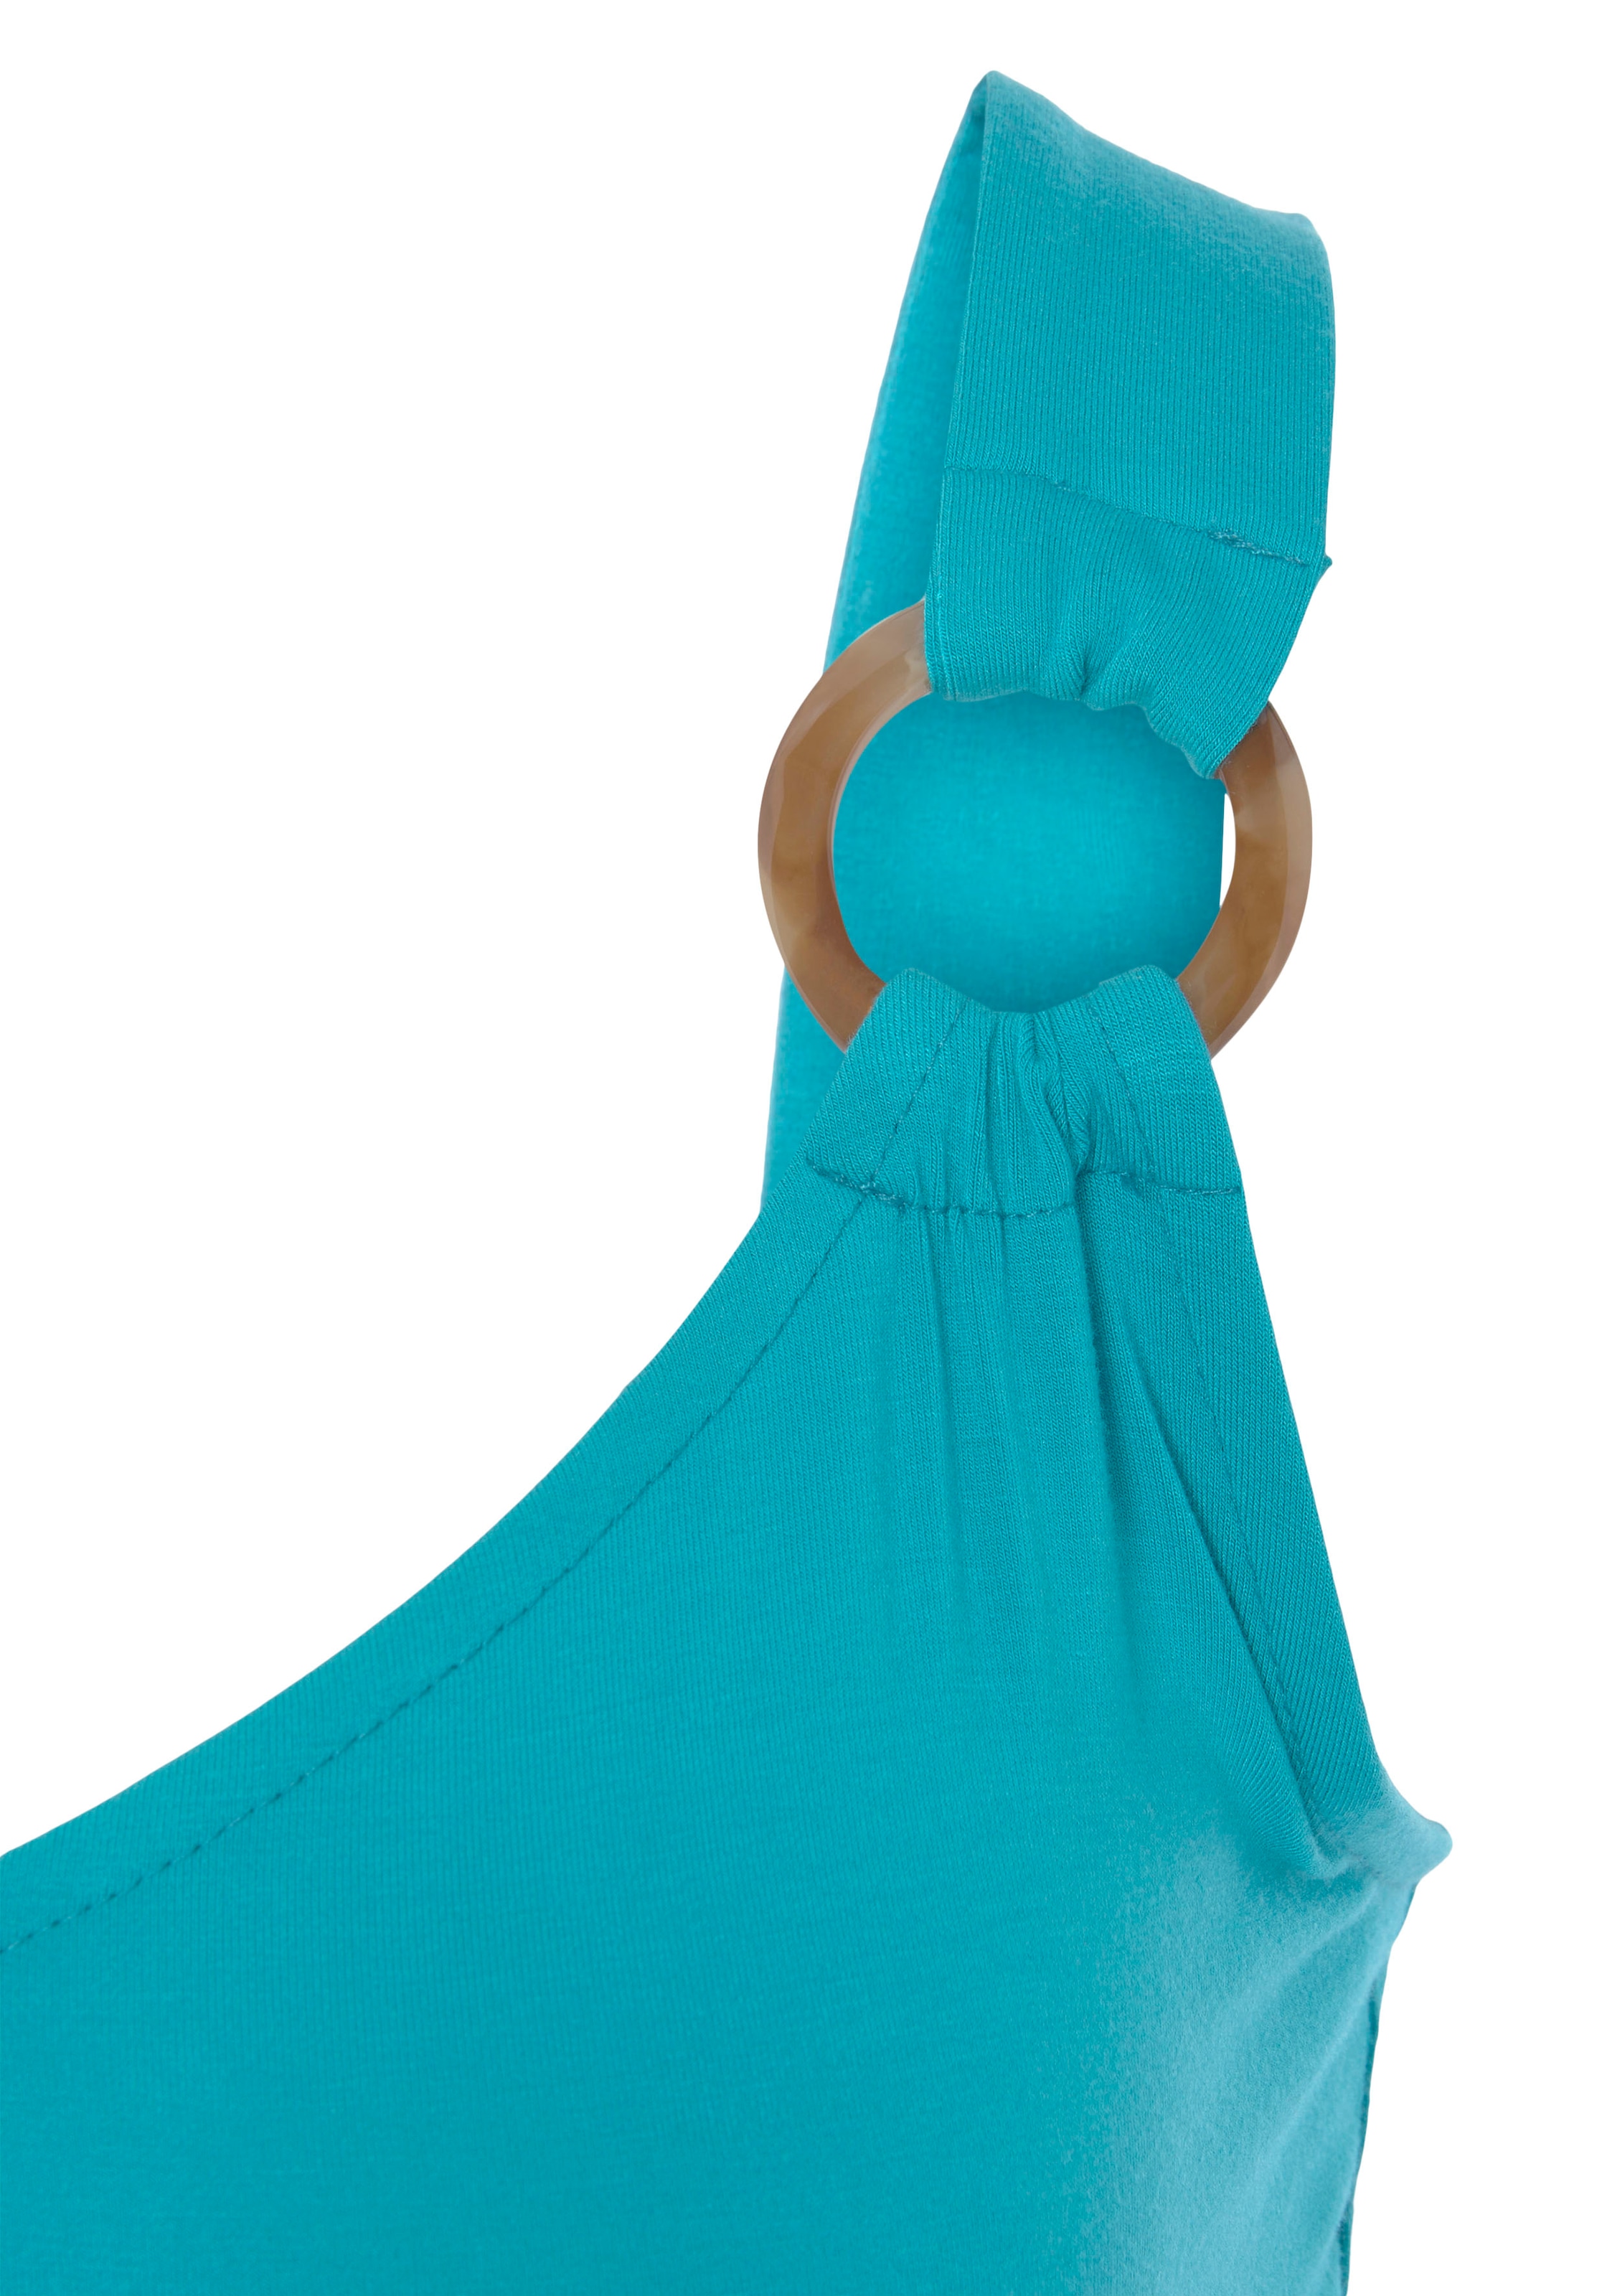 LASCANA Jerseykleid, mit Ringdetails an den Trägern, Strandkleid, Minikleid, Sommerkleid